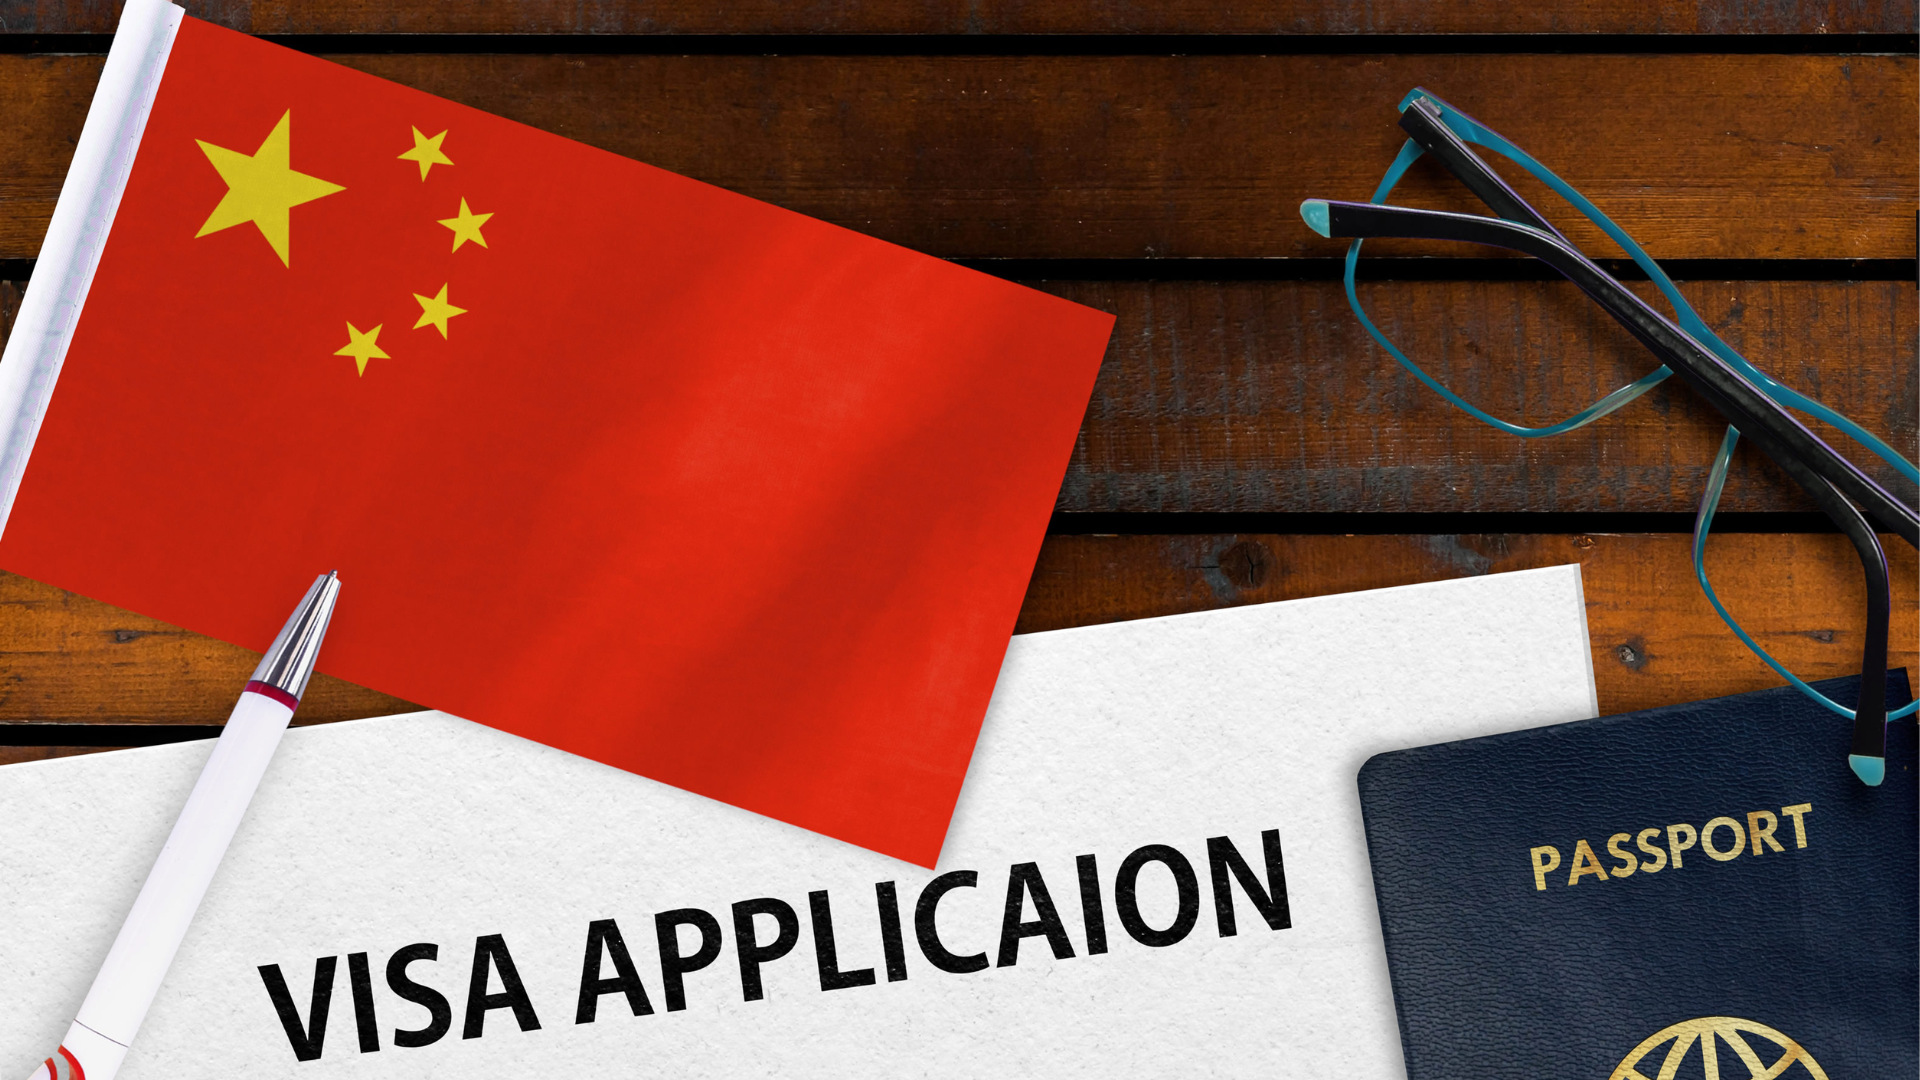 อุตฯ ท่องเที่ยวสับสนนโยบาย Free Visa นักท่องเที่ยวจีนชะลอเข้าไทยรอความชัดเจน 